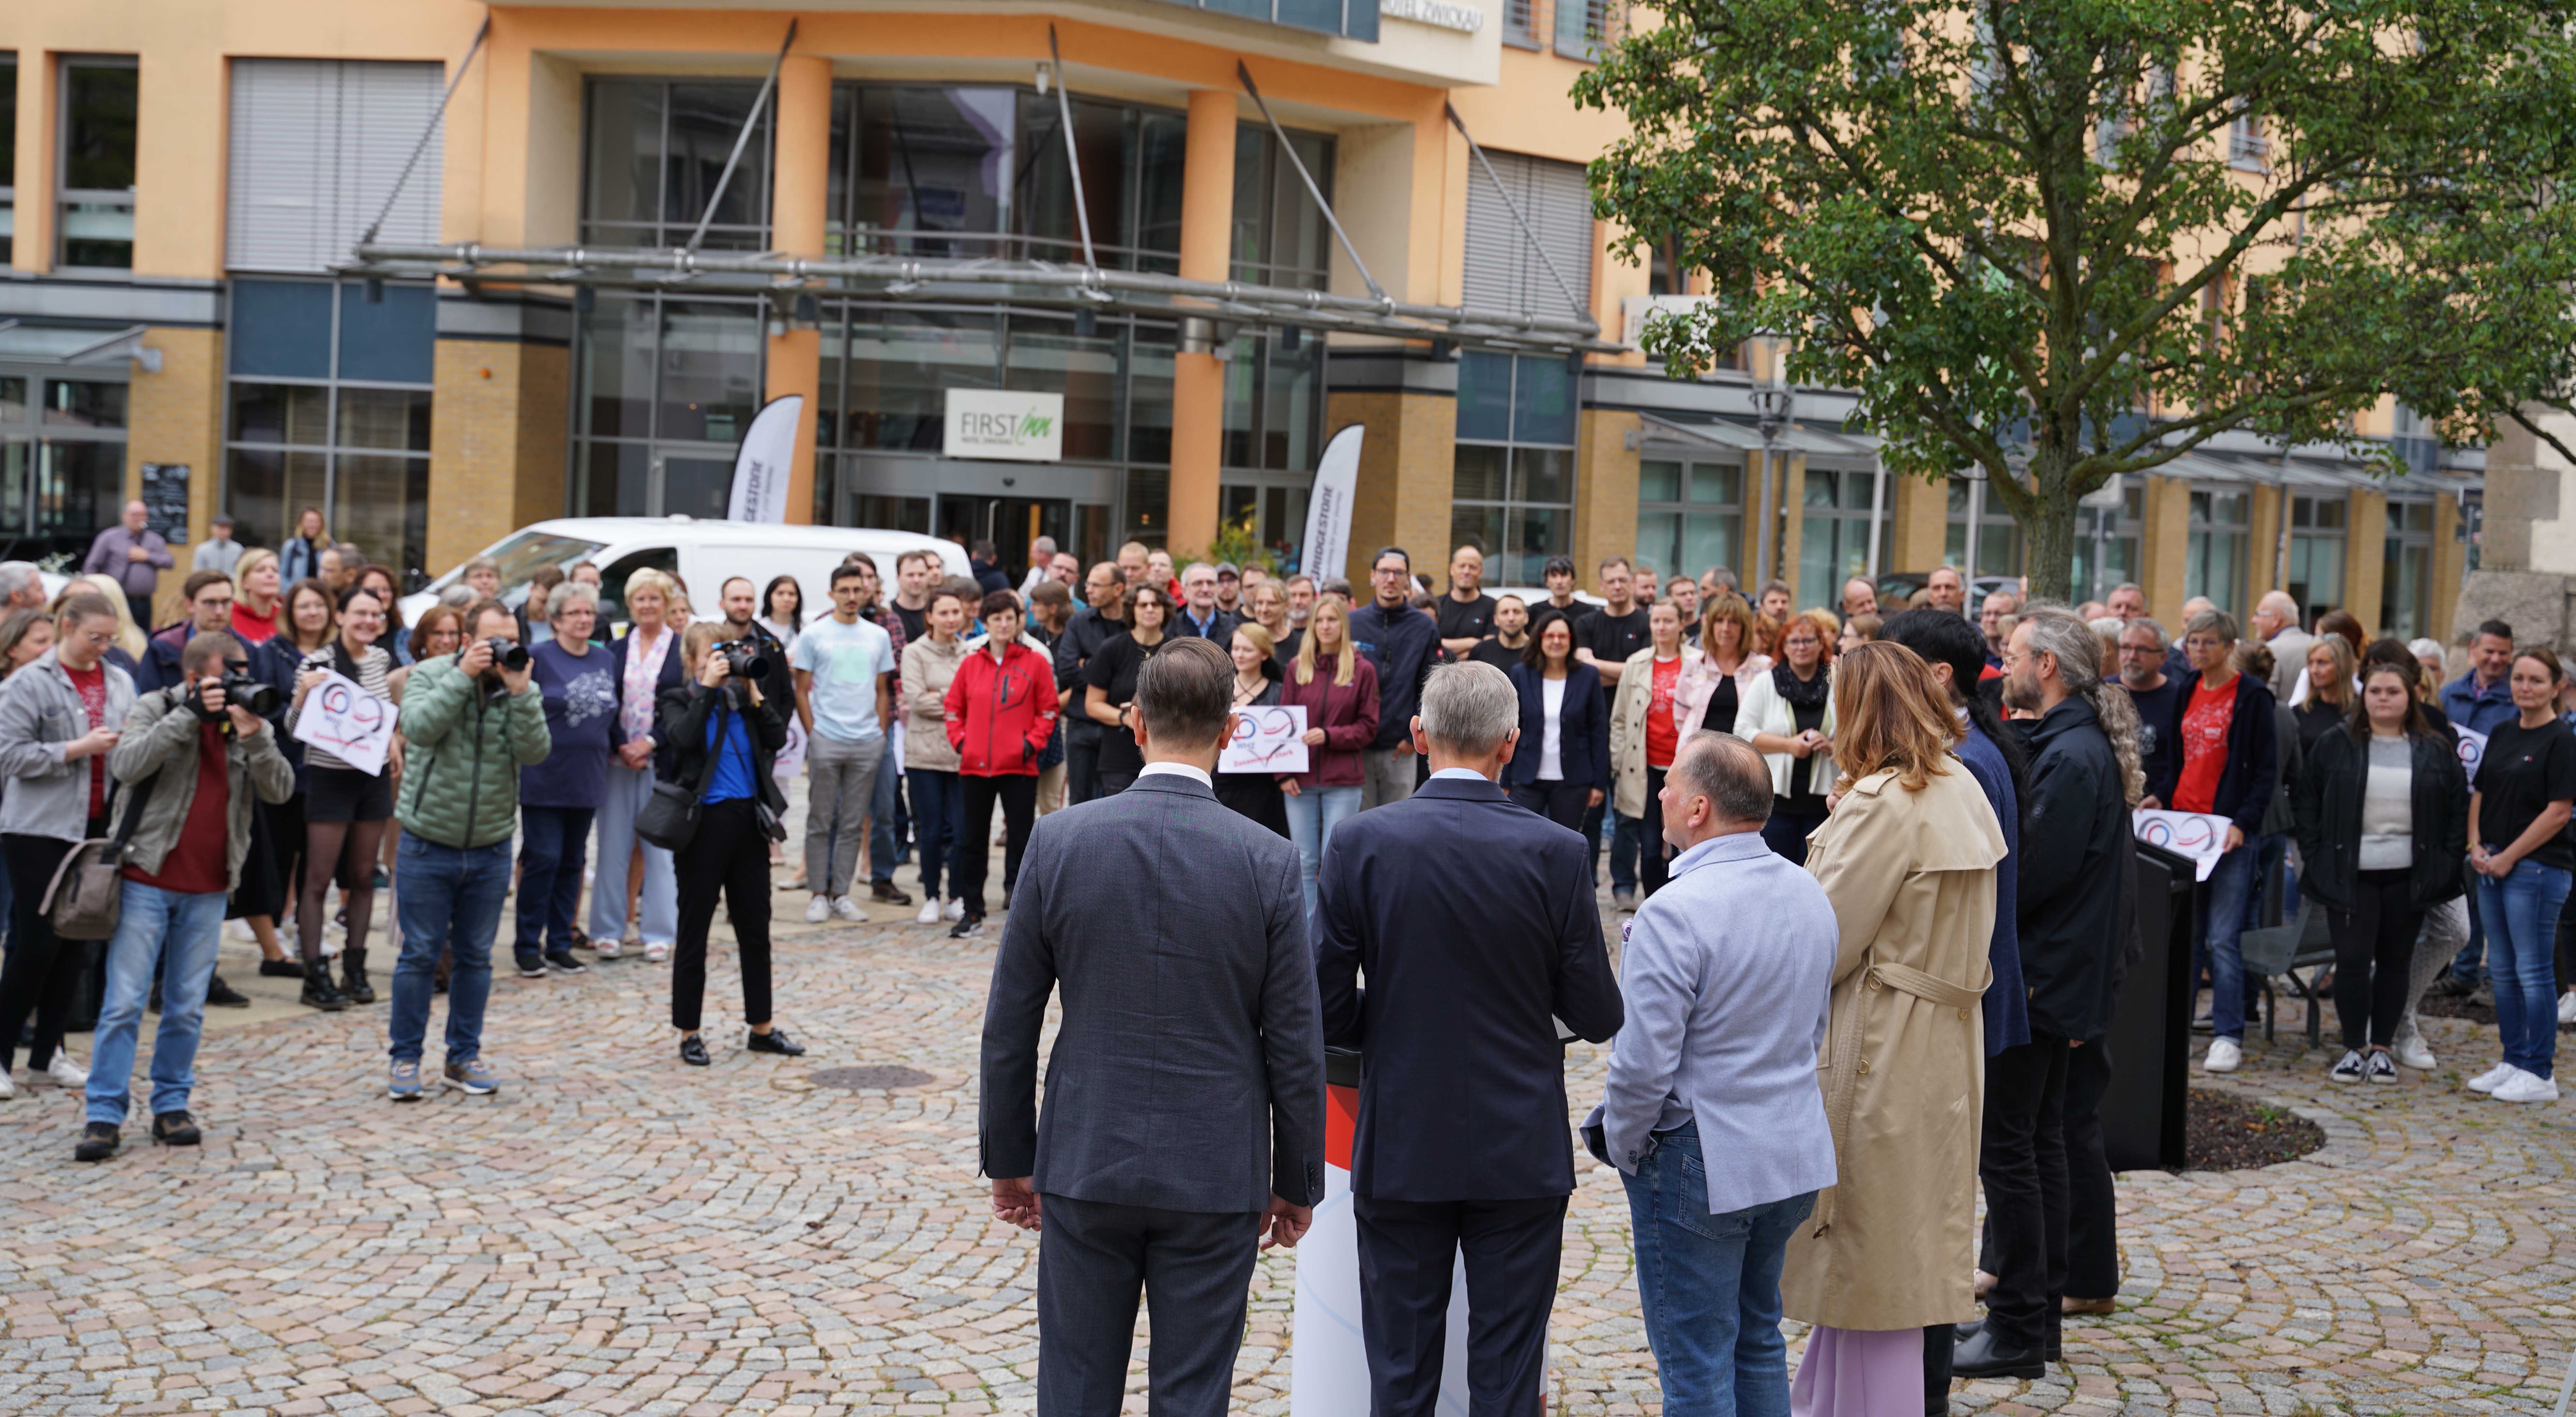 Foto: Verleihung "Hochschulstadt" Zwickau, Verantwortliche stehen vor Zuschauern der Veranstaltung